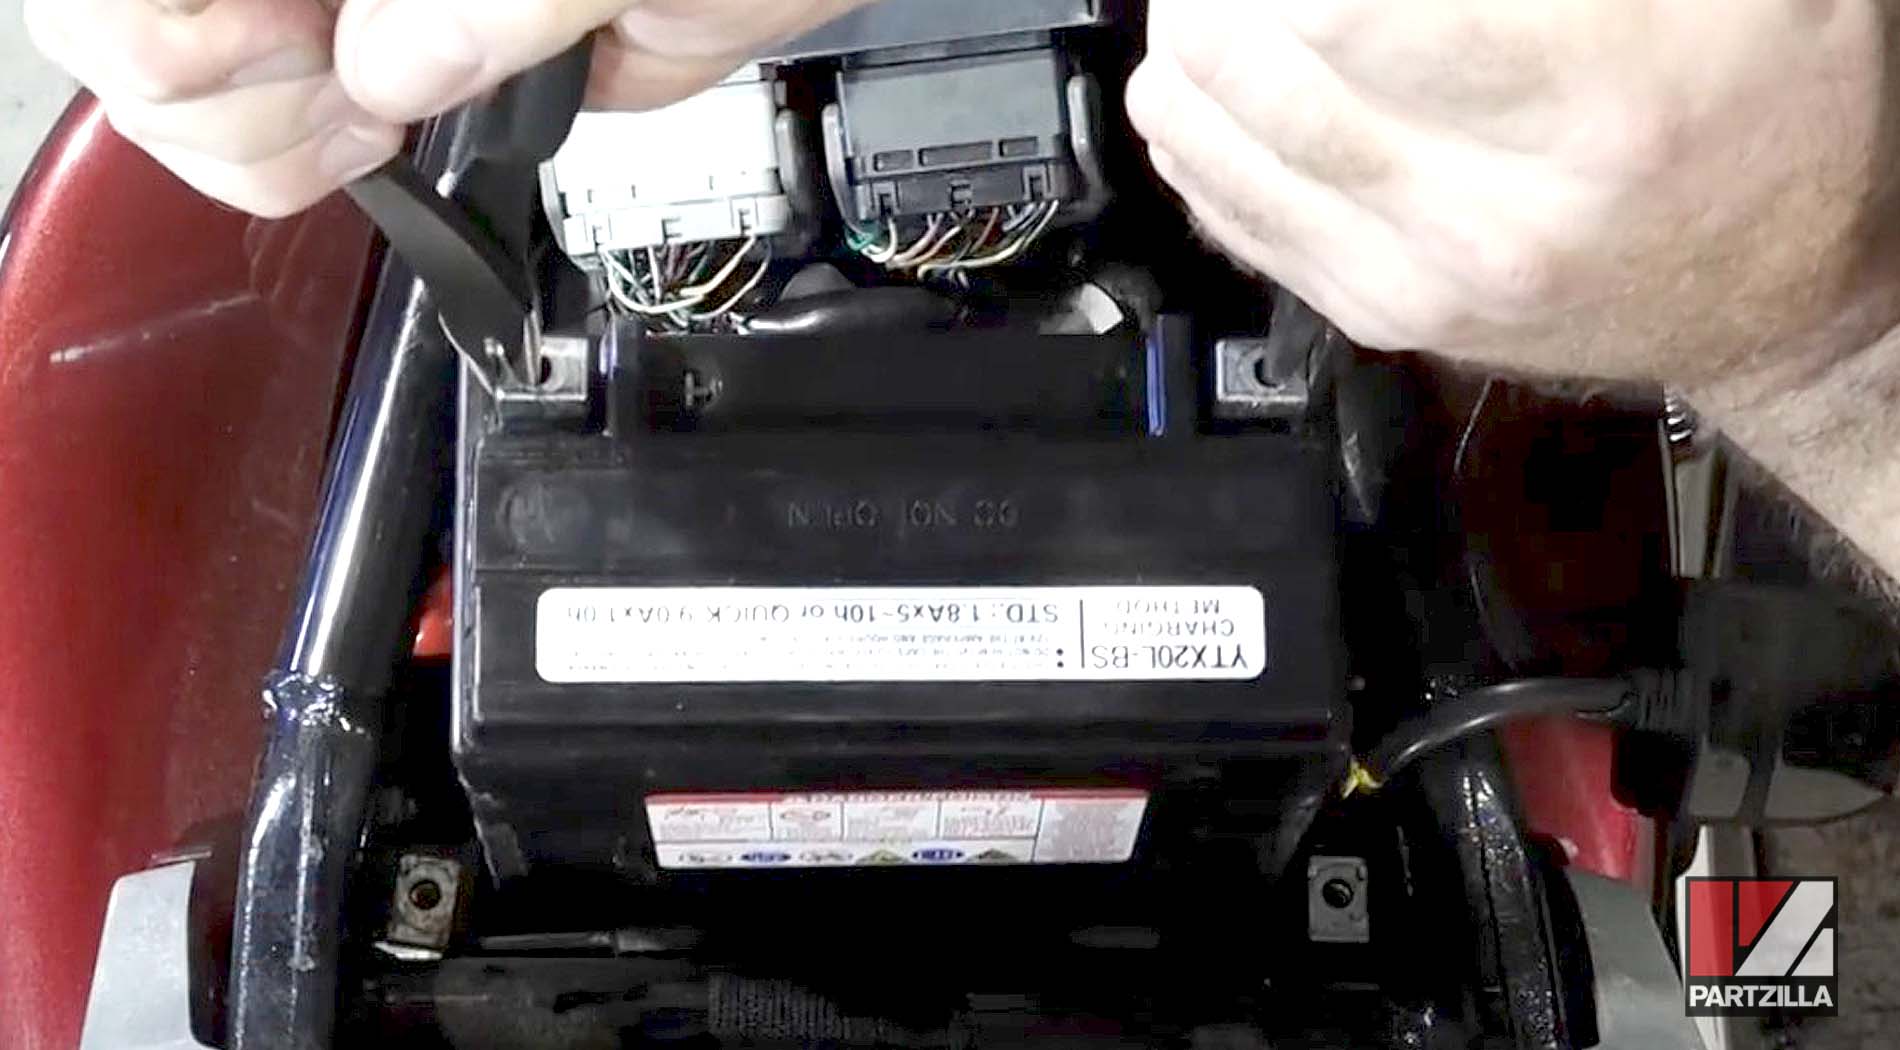 2005 Honda VTX1800 motorcycle new battery installation